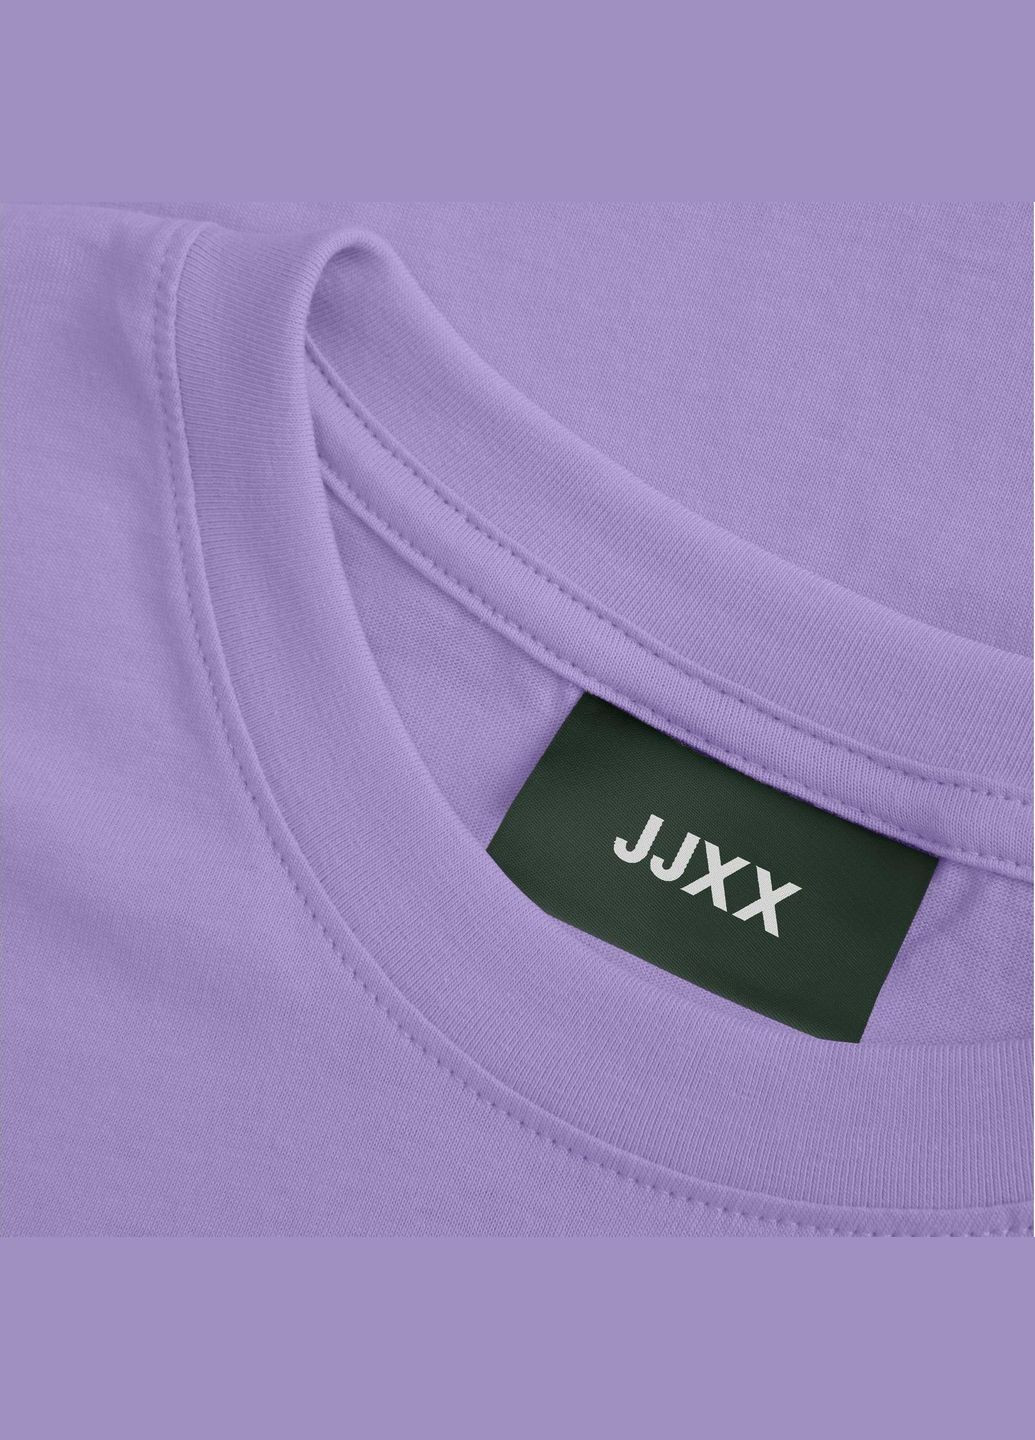 Сиреневая футболка basic,сиреневый,jjxx Jack & Jones